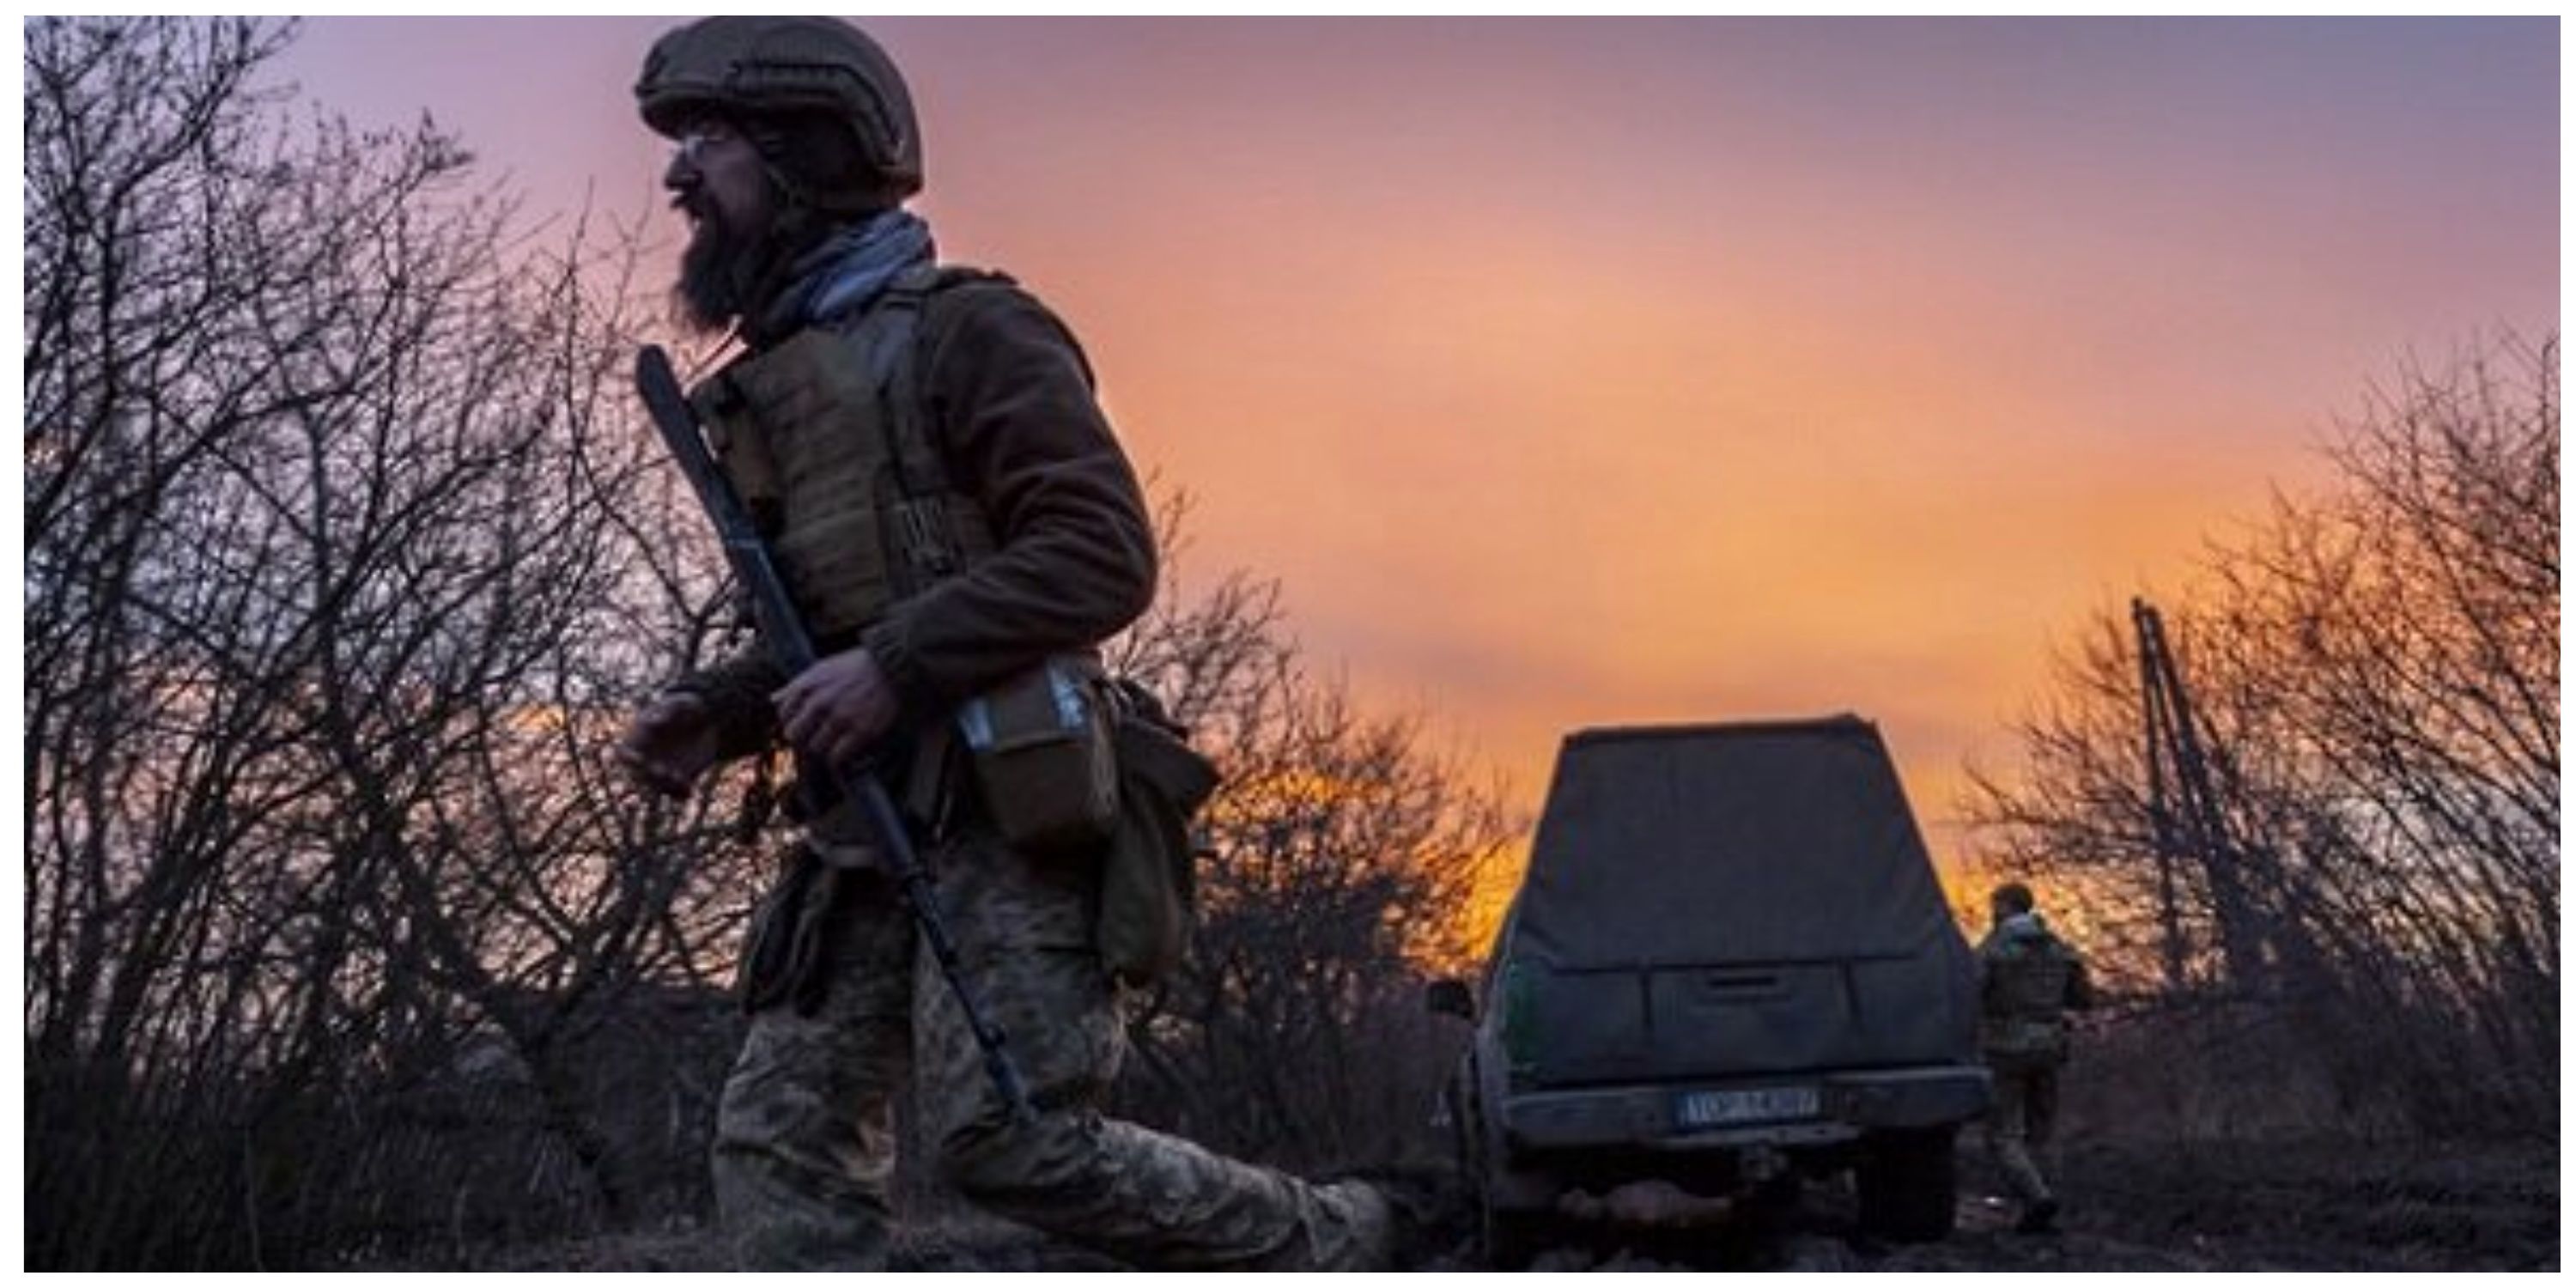 ادعای روسیه درباره آمار کشته های ارتش اوکراین